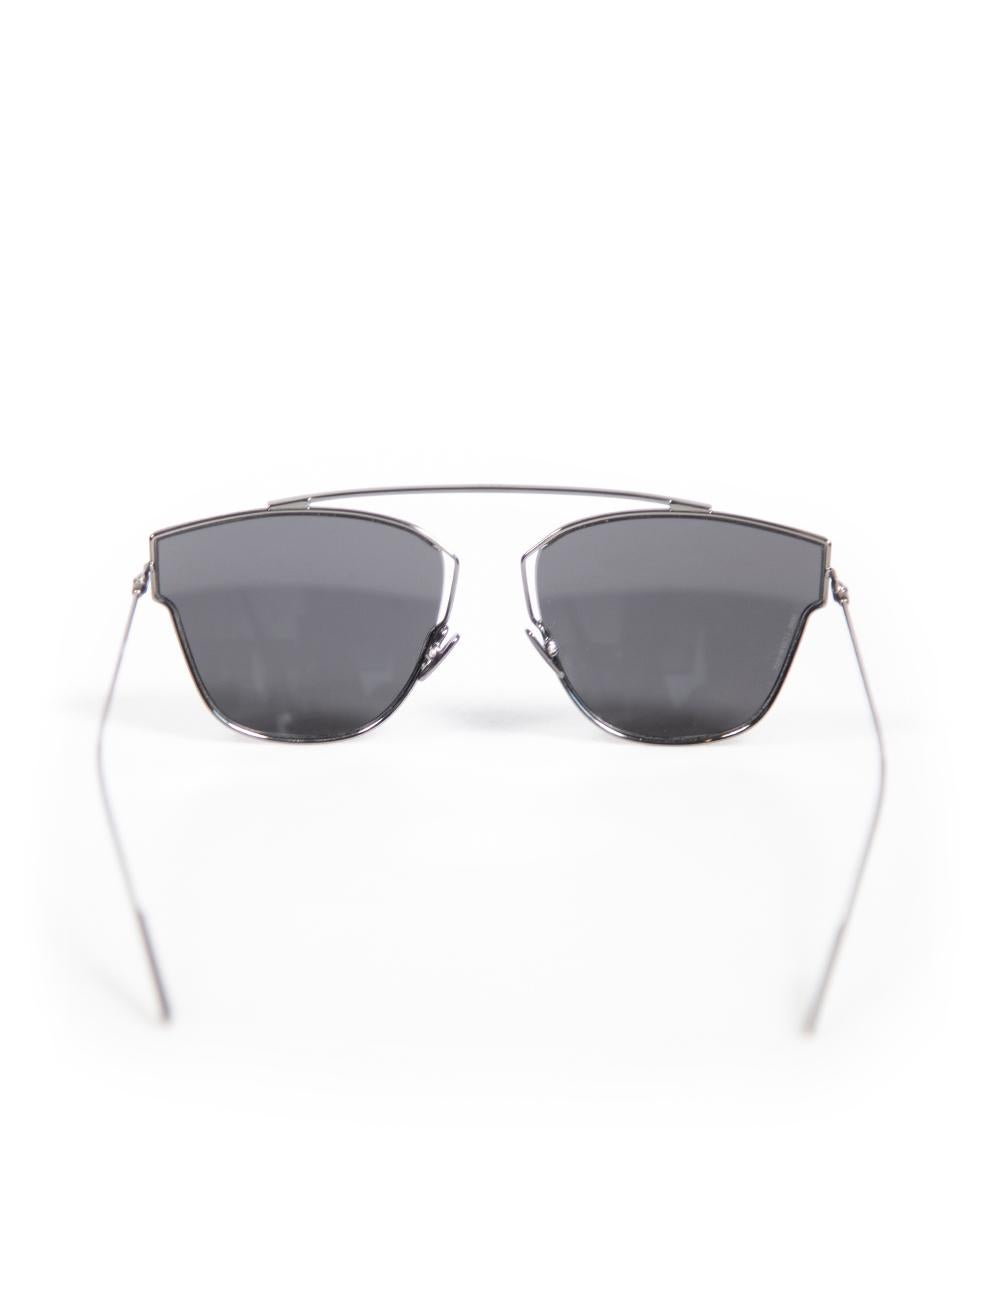 Dior Black DIOR0204S Aviator Sunglasses In Good Condition For Sale In London, GB